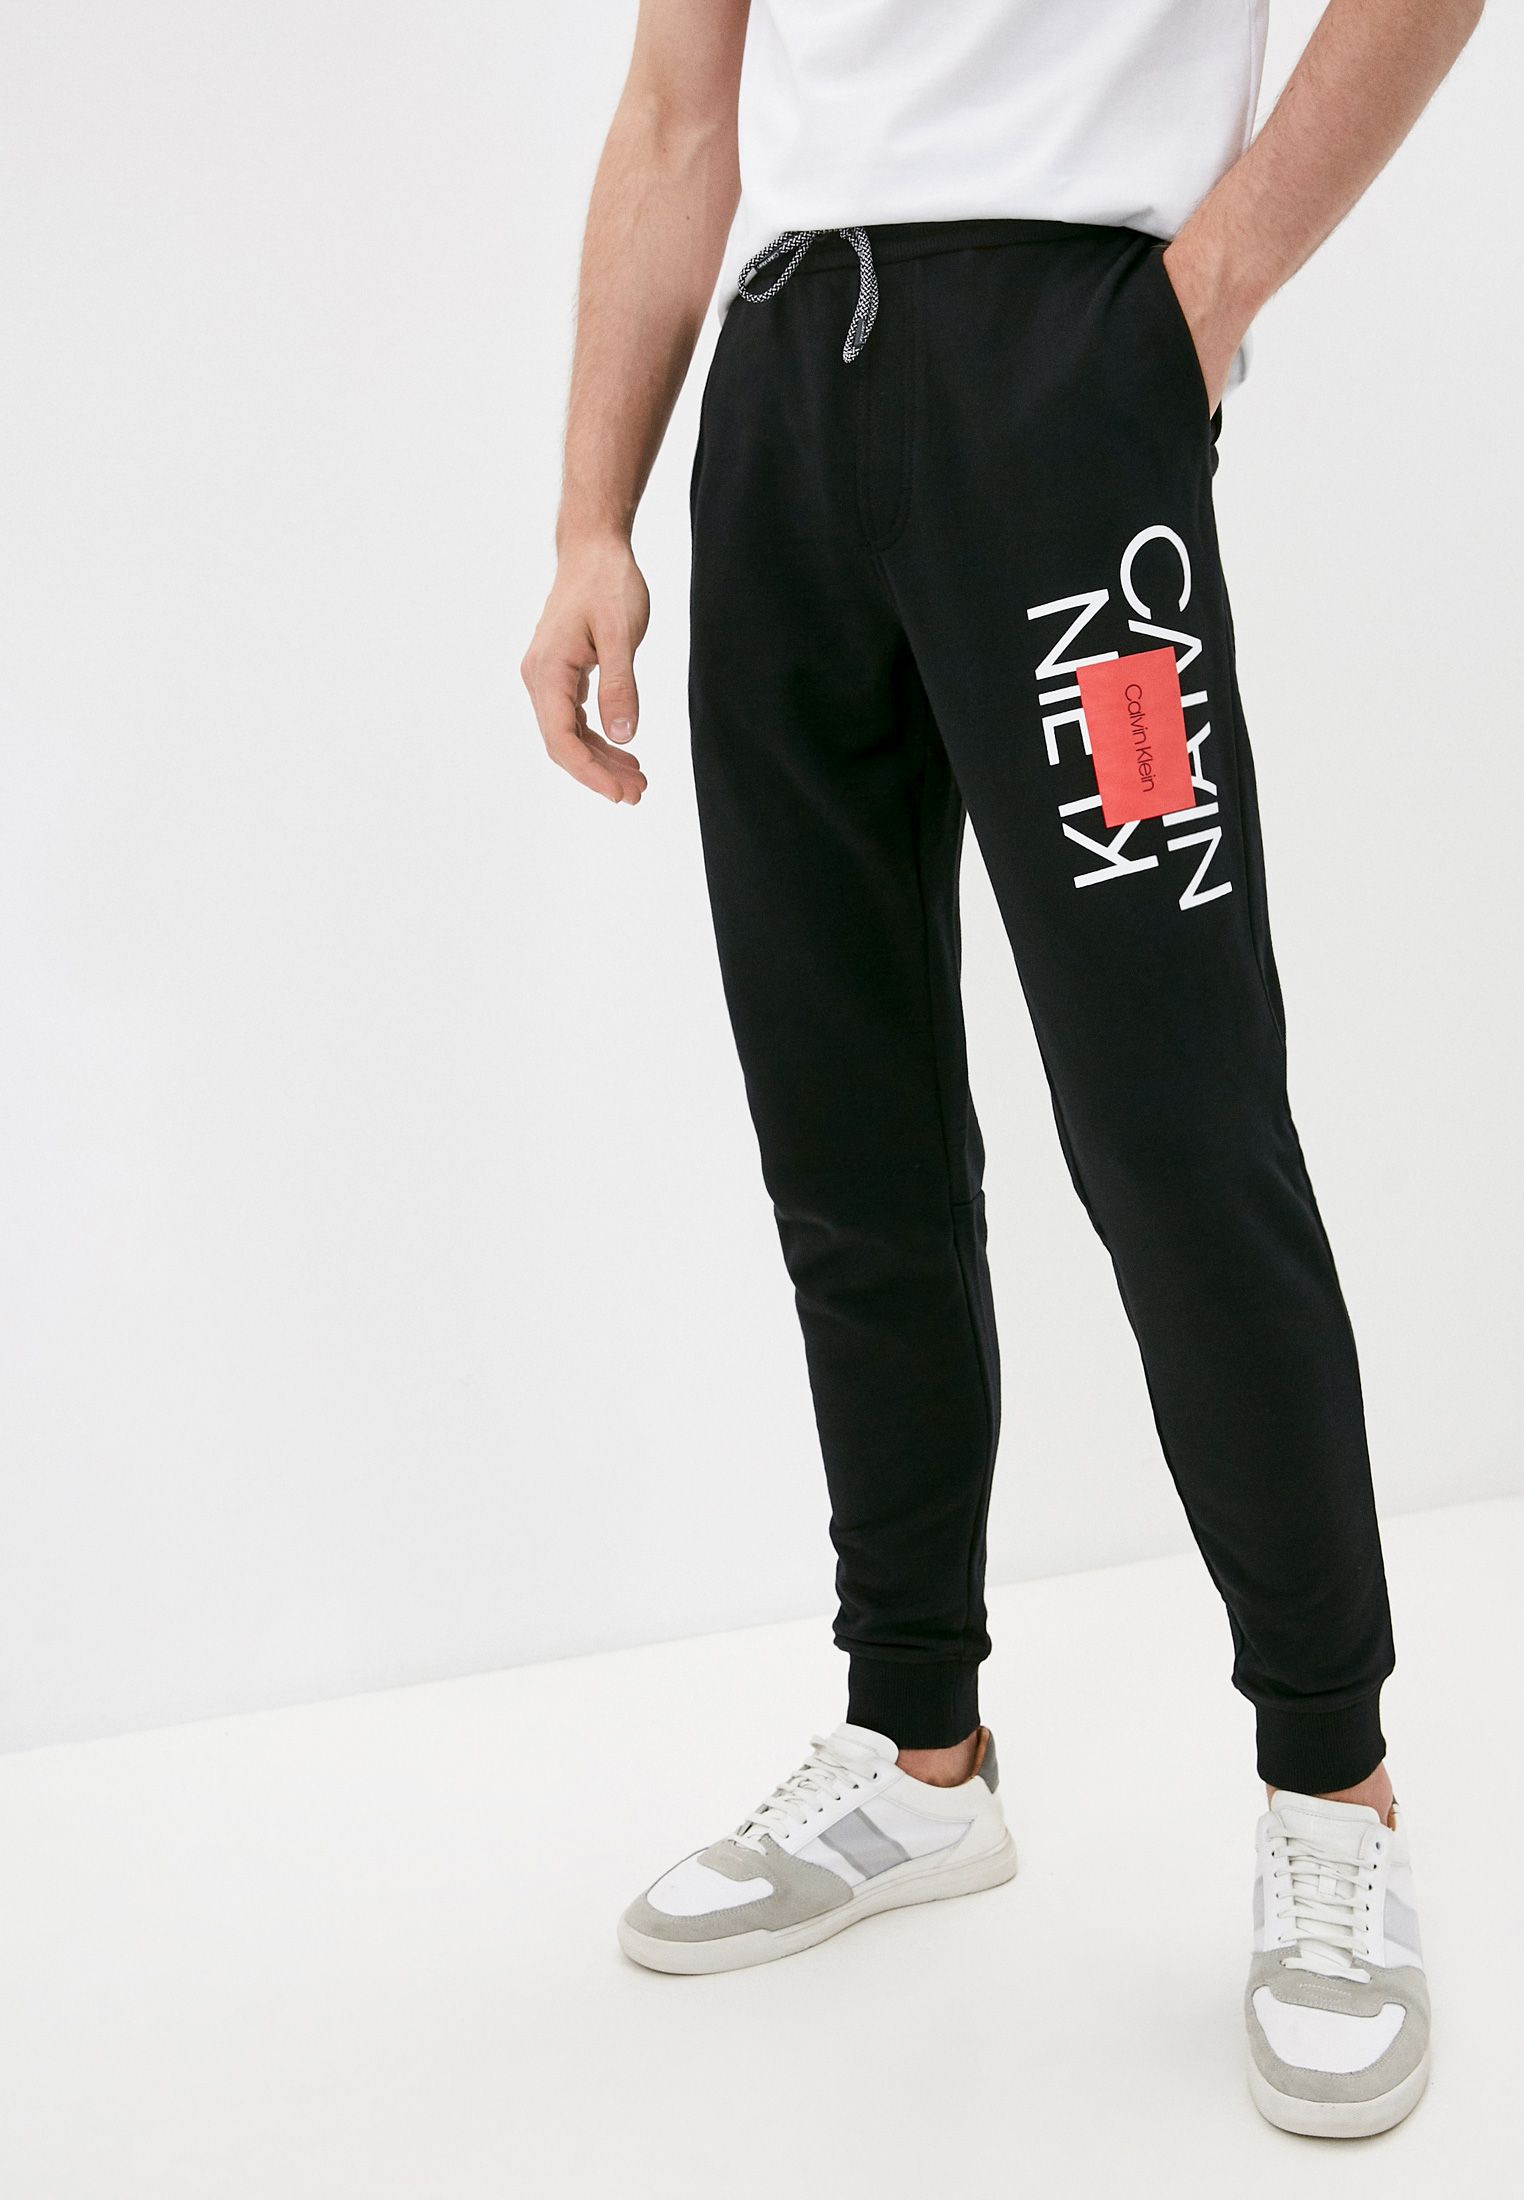 Мужские спортивные брюки Calvin Klein (Кельвин Кляйн) K10K107268 купить за10990 руб.